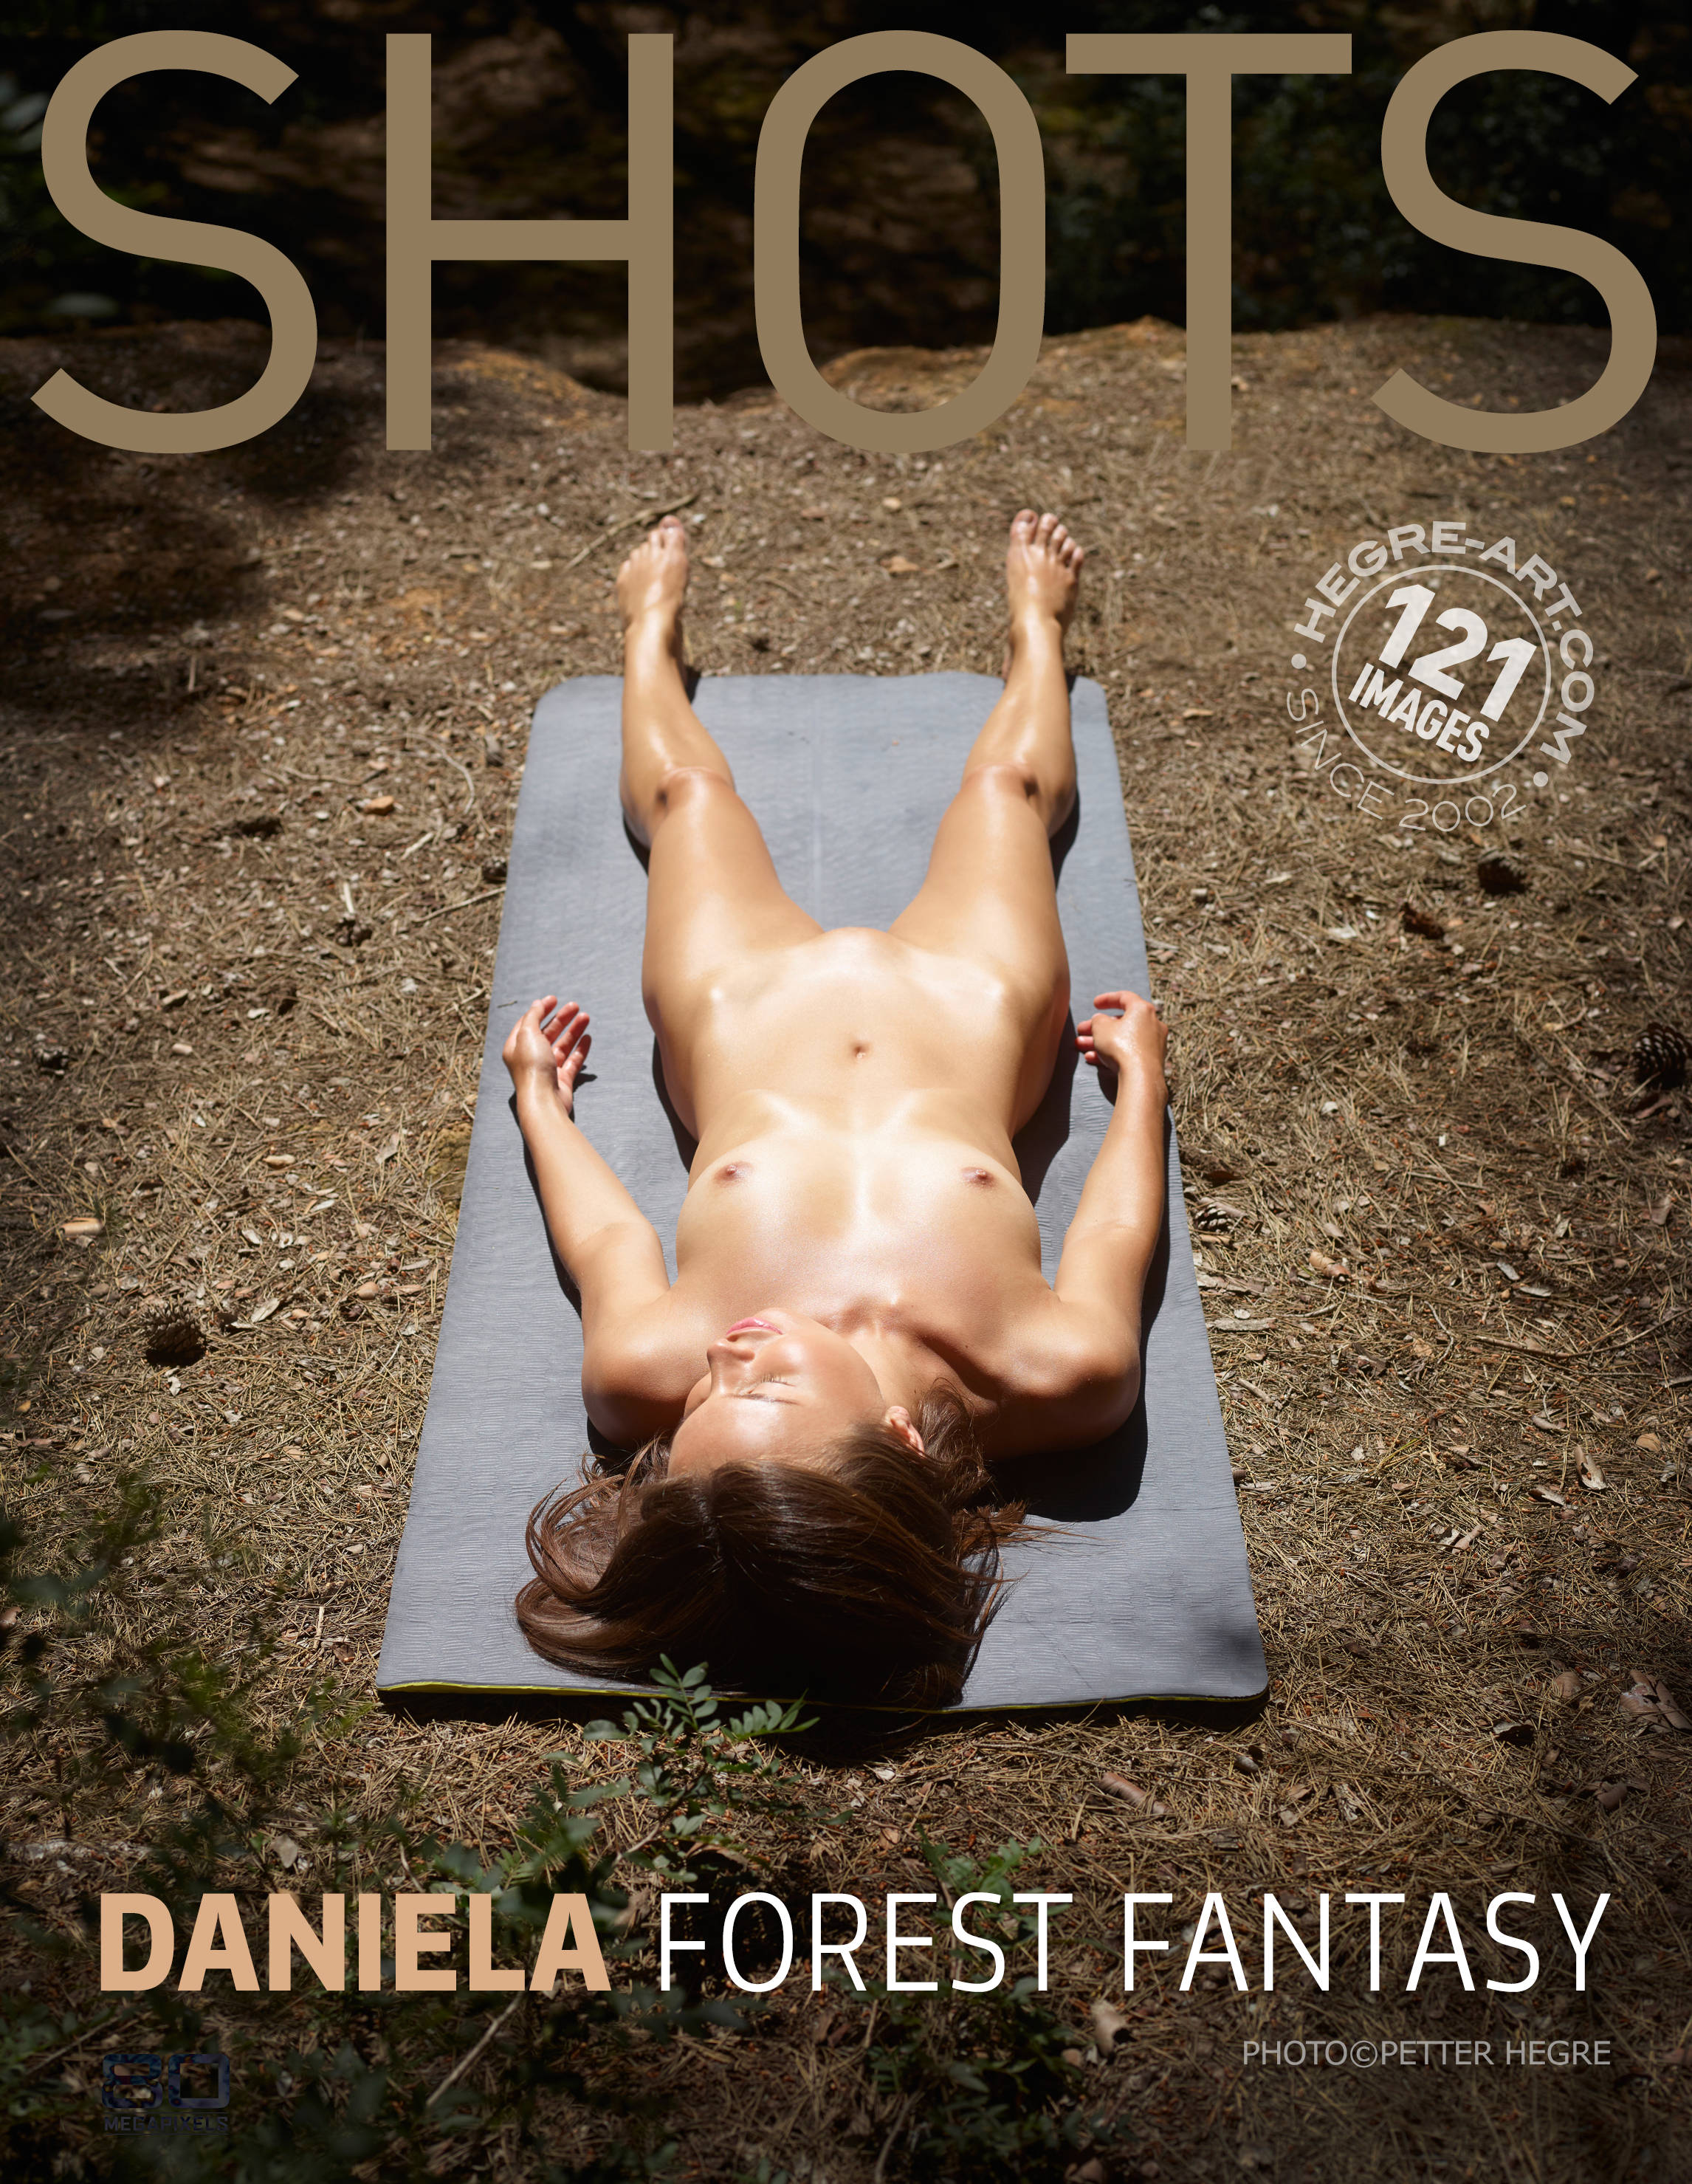 daniela-forest-fantasy-poster.jpg